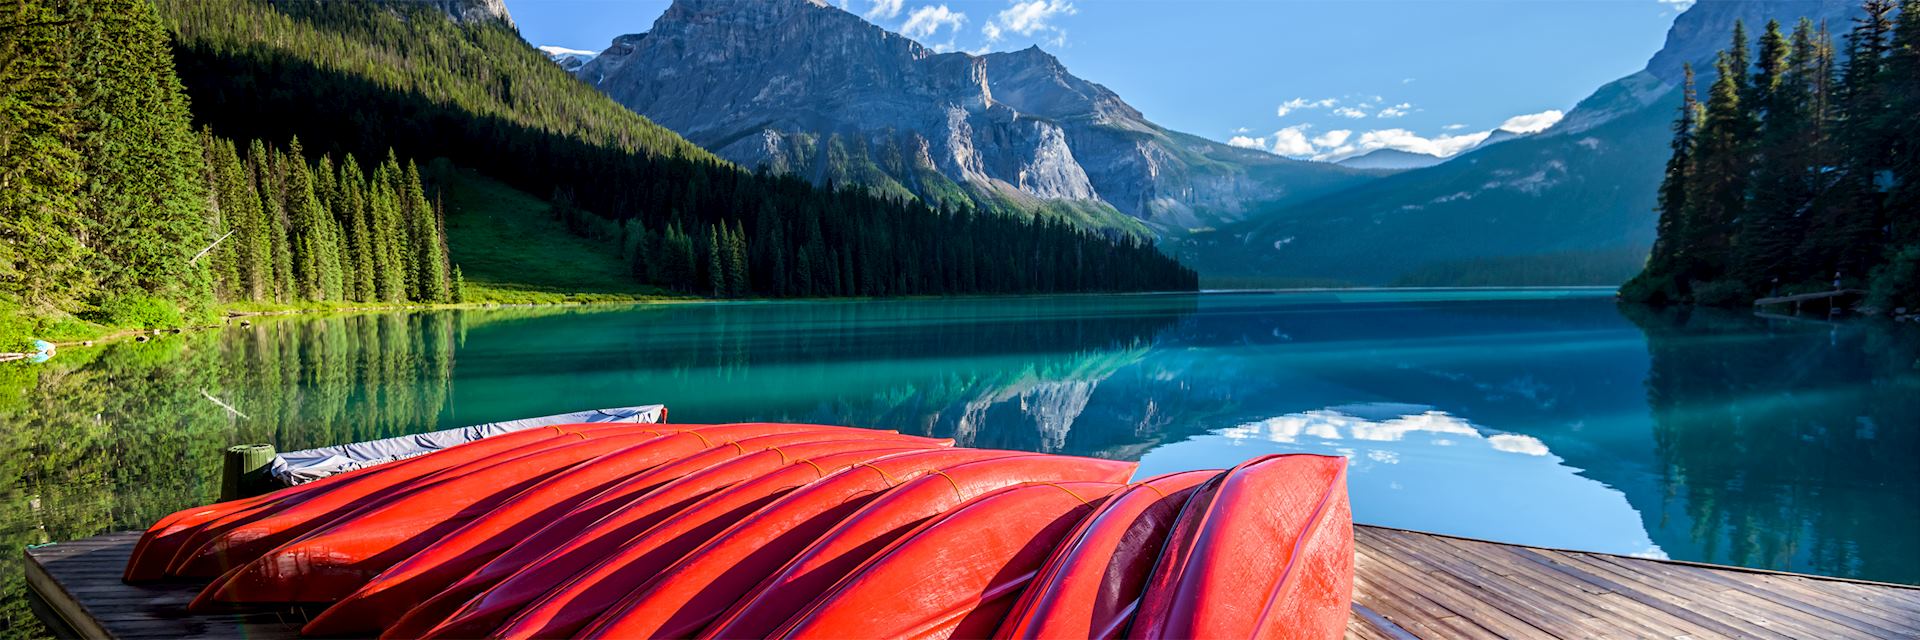 Kayaks at Emerald Lake